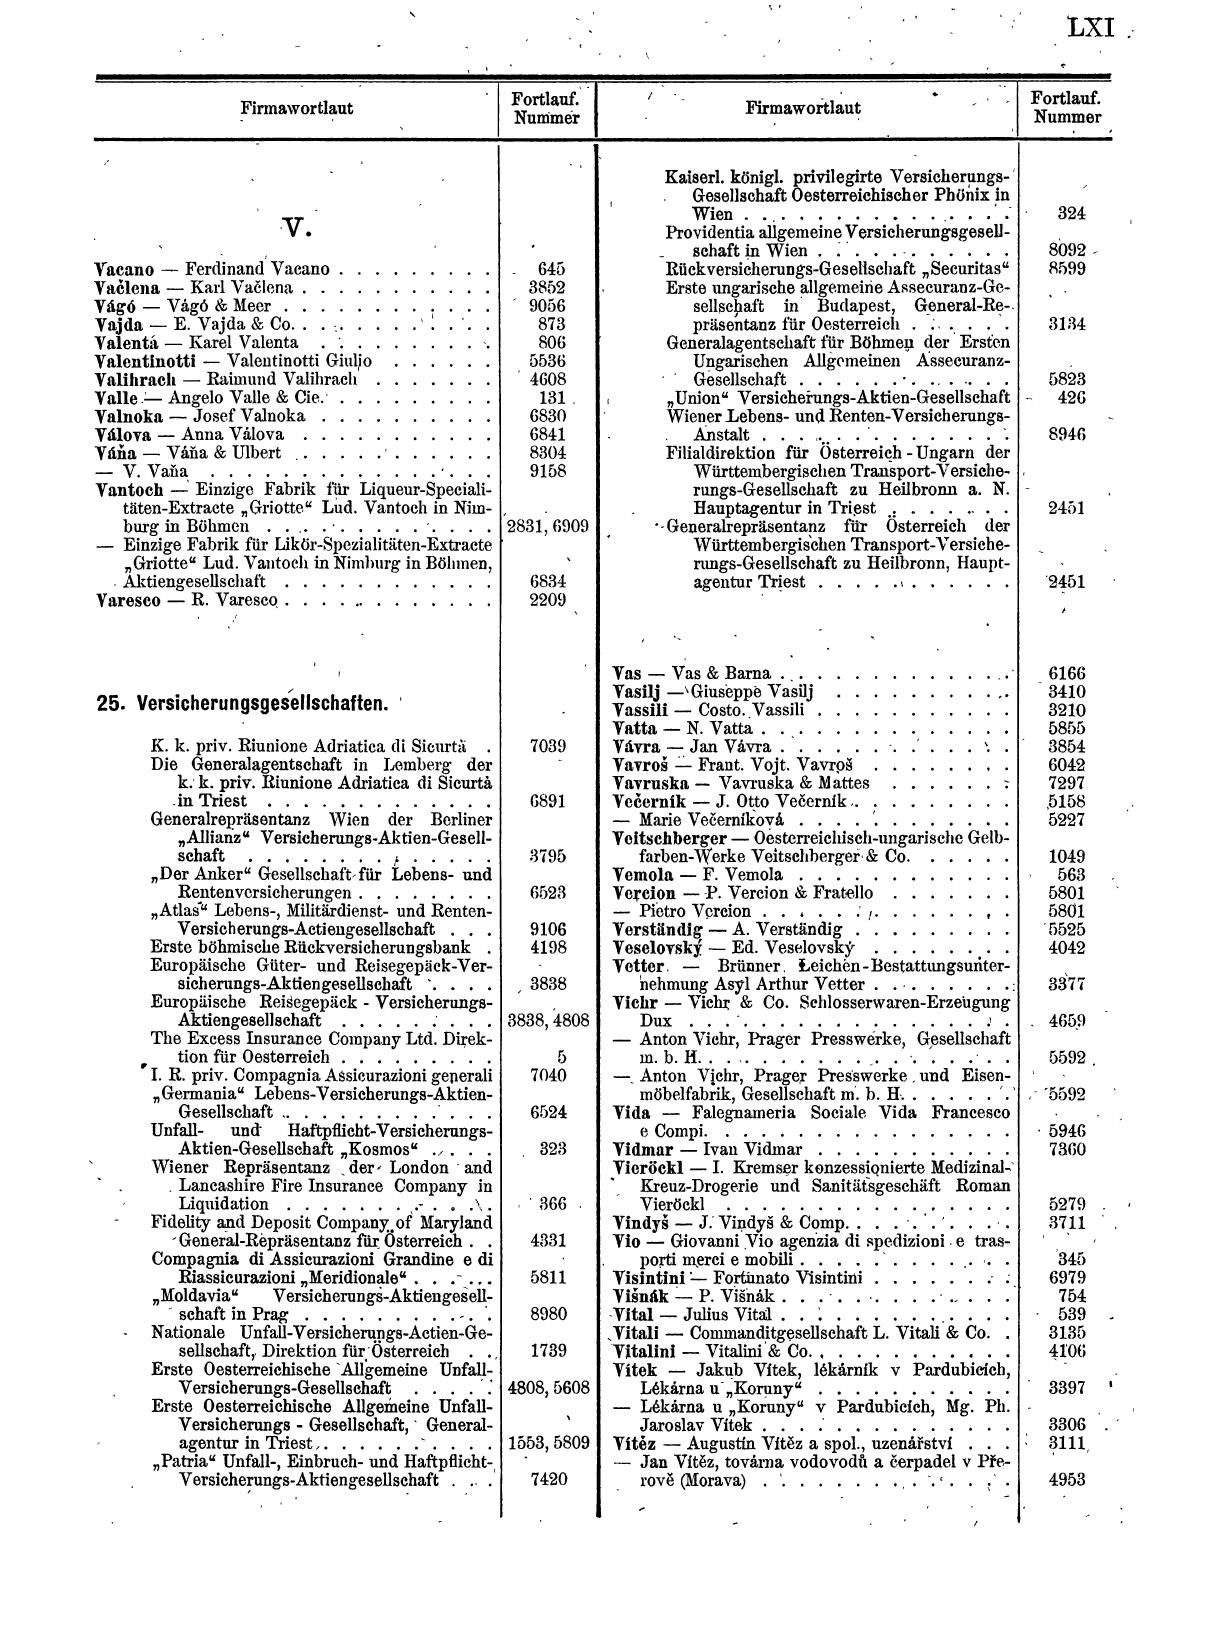 Zentralblatt für die Eintragungen in das Handelsregister 1913, Teil 1 - Seite 69